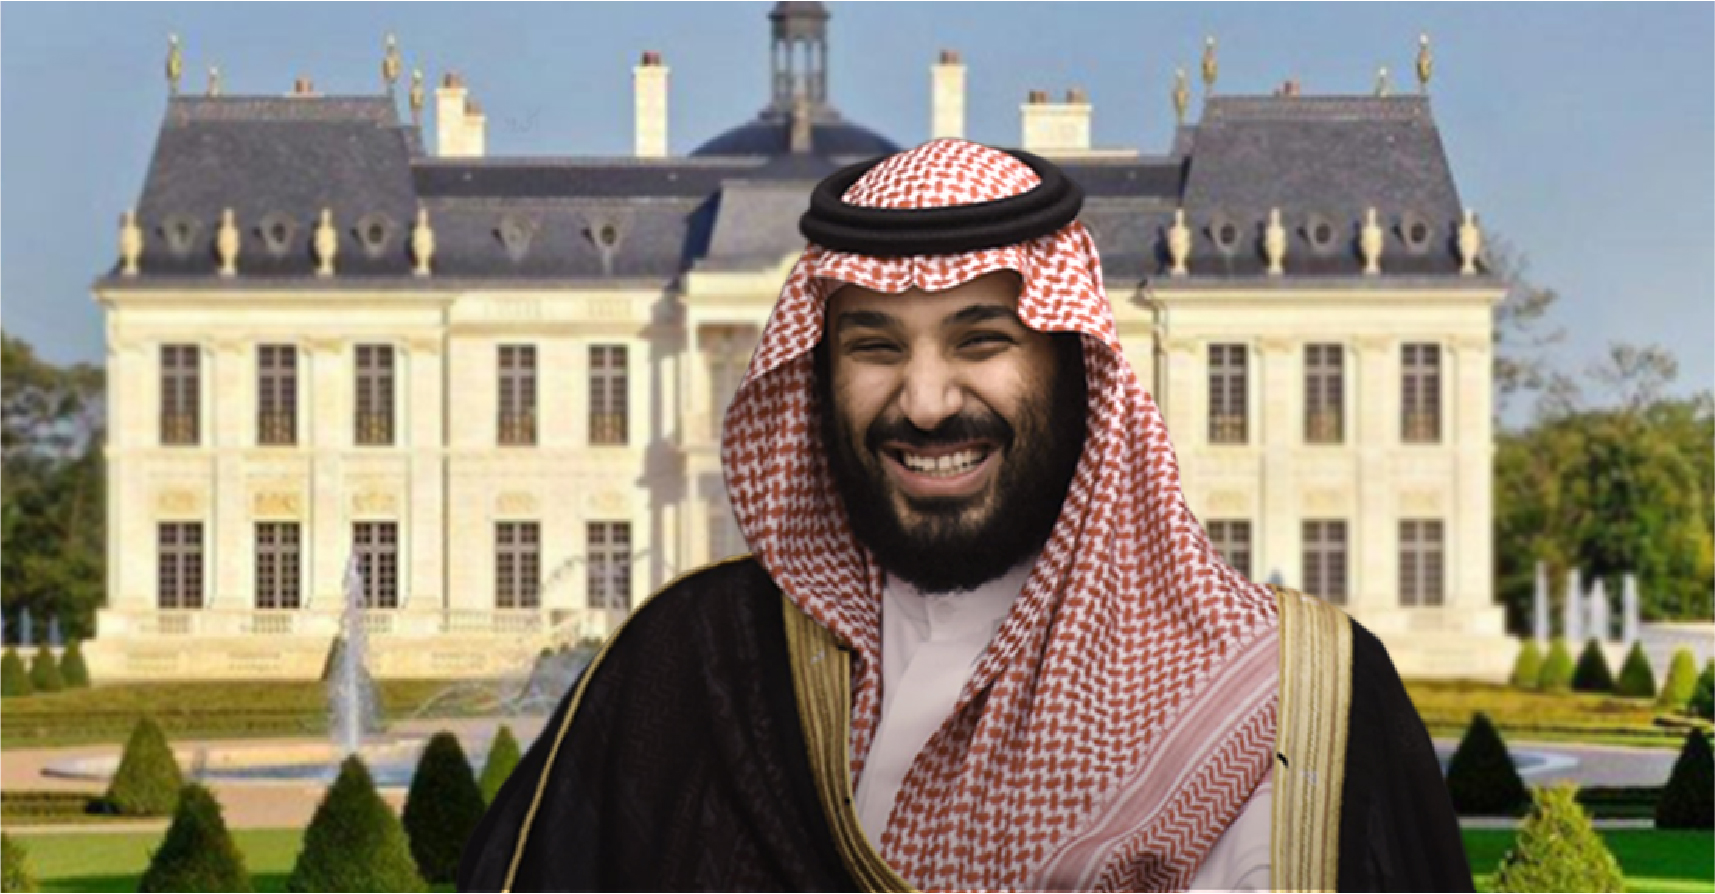 صورة محمد بن سلمان يكافئ نفسه على جهوده بمحاربة الفساد بشراء قصر بـ ٣٠٠ مليون دولار